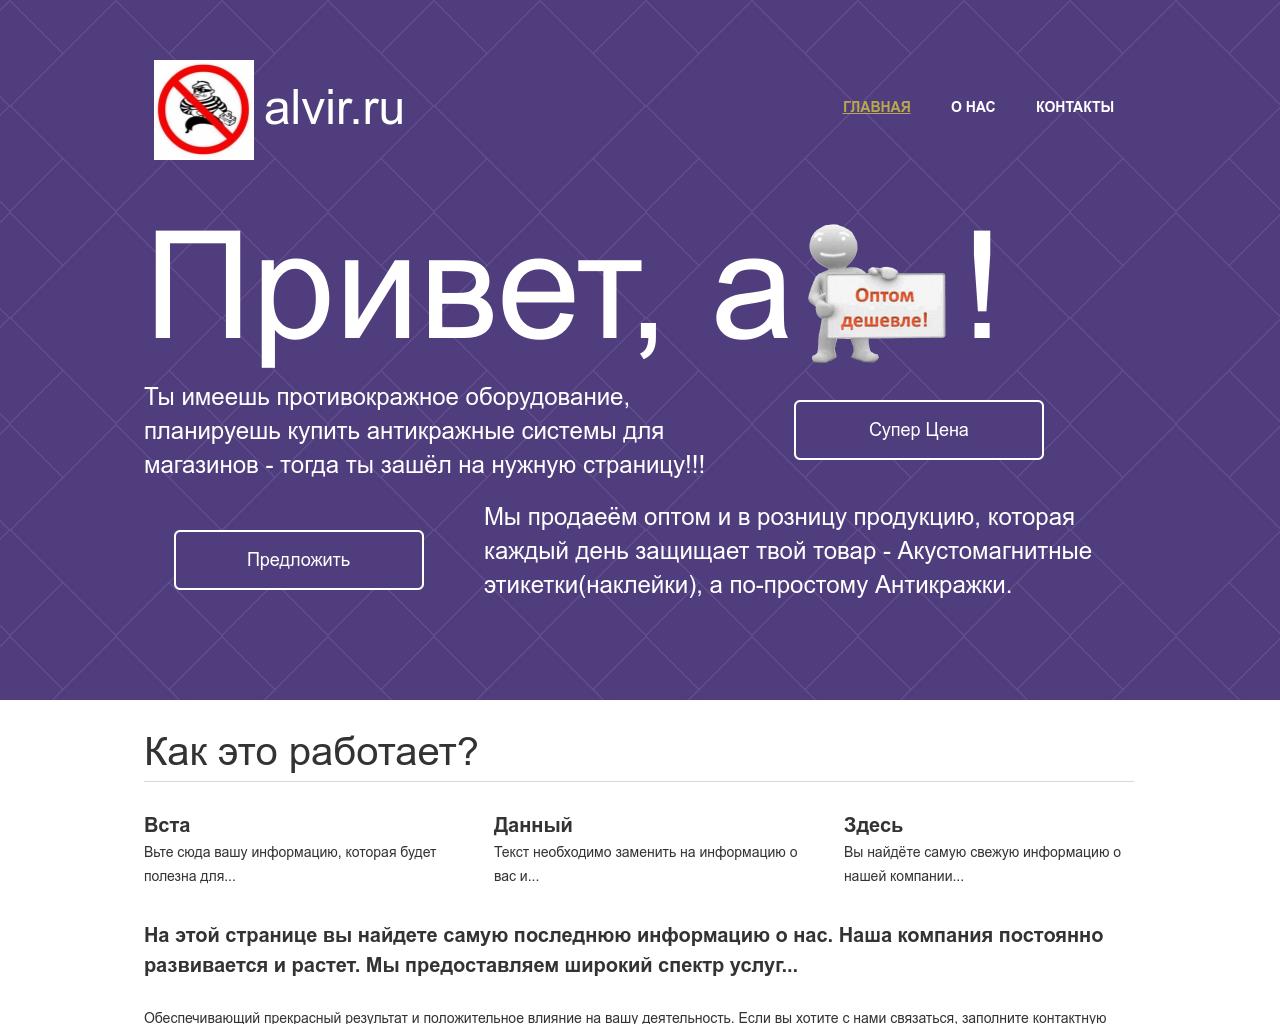 Изображение сайта alvir.ru в разрешении 1280x1024